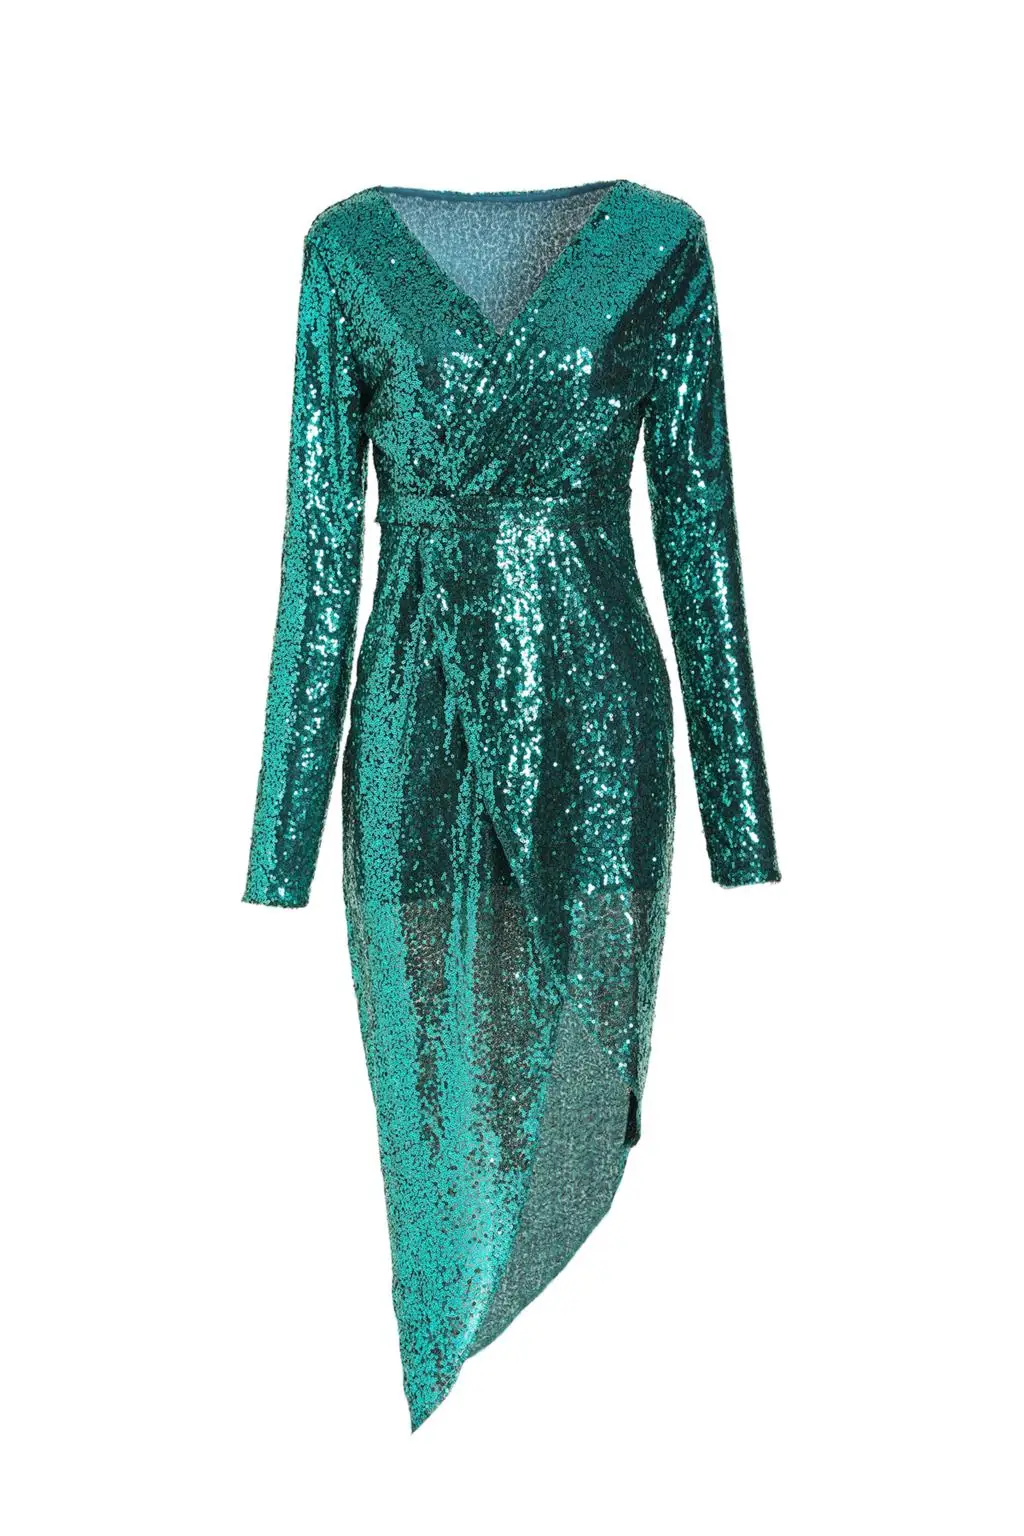 Зима сексуальный v-образный вырез с блестками платье для женщин с длинным рукавом облегающее платье Элегантное Черное Разделение Клубные вечерние платье размера плюс, женские платья - Цвет: Зеленый